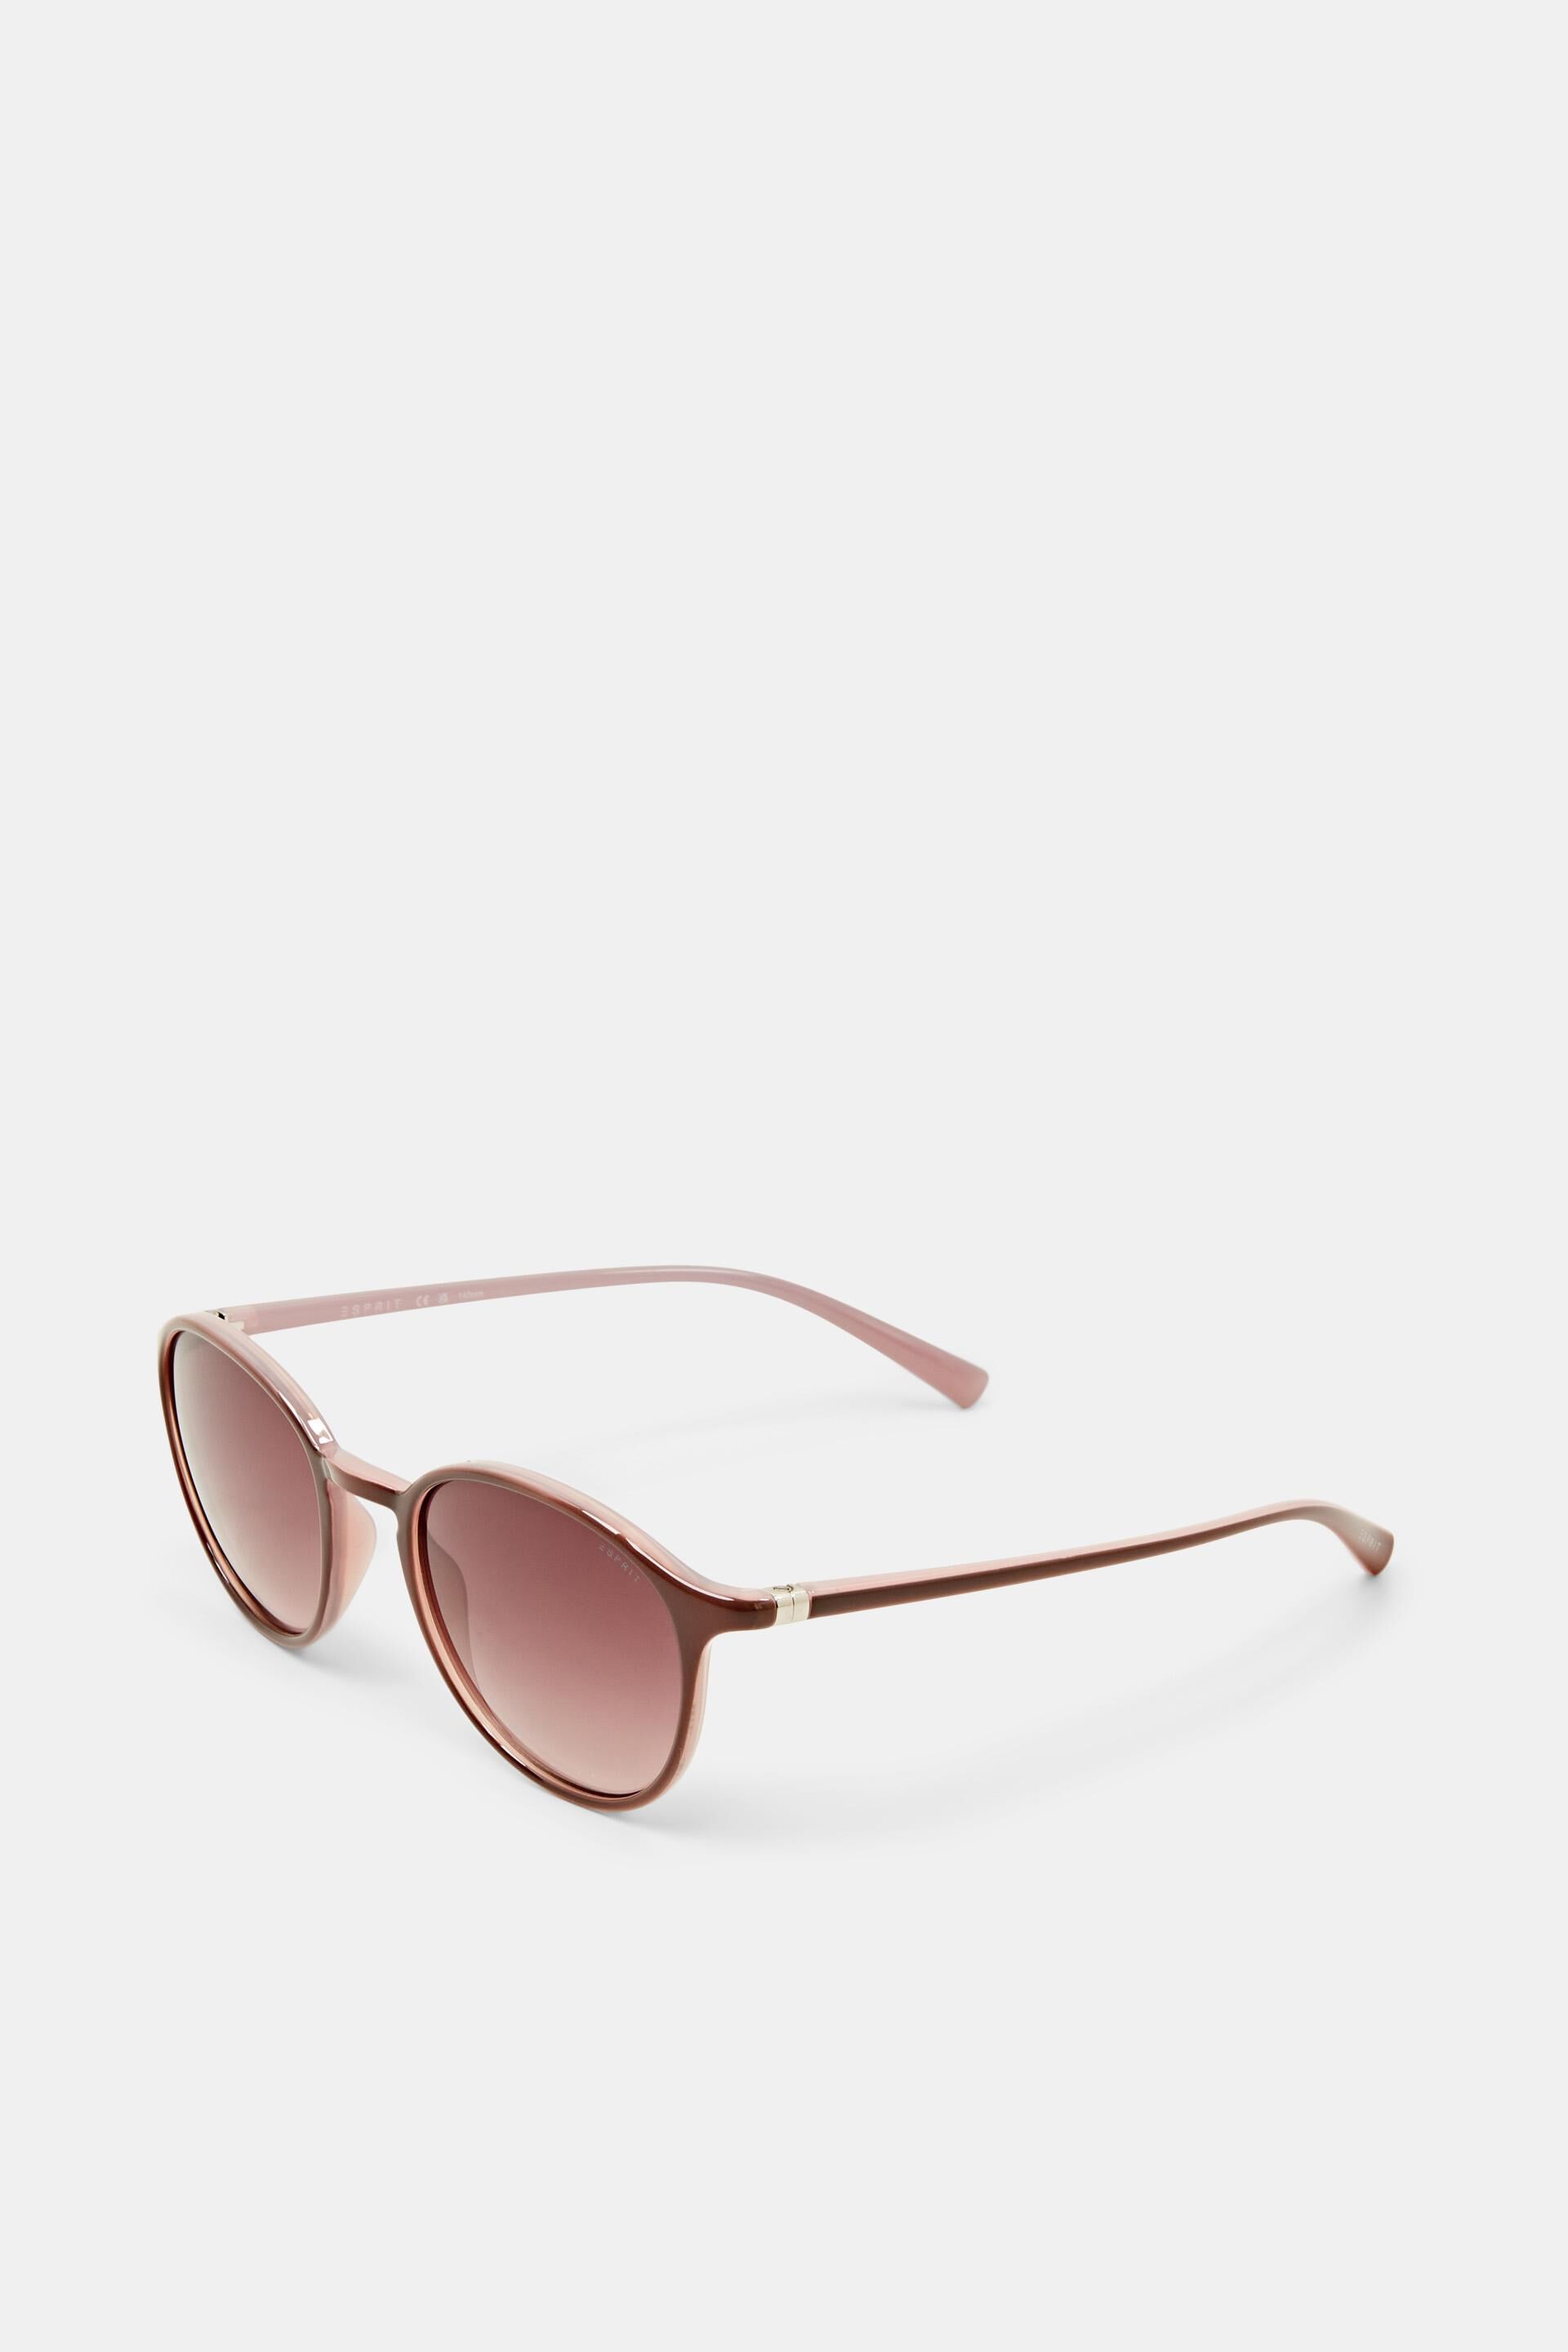 Chimi | Model 04 Brown Gradient Lenses Sunglasses 45mm – Baltzar